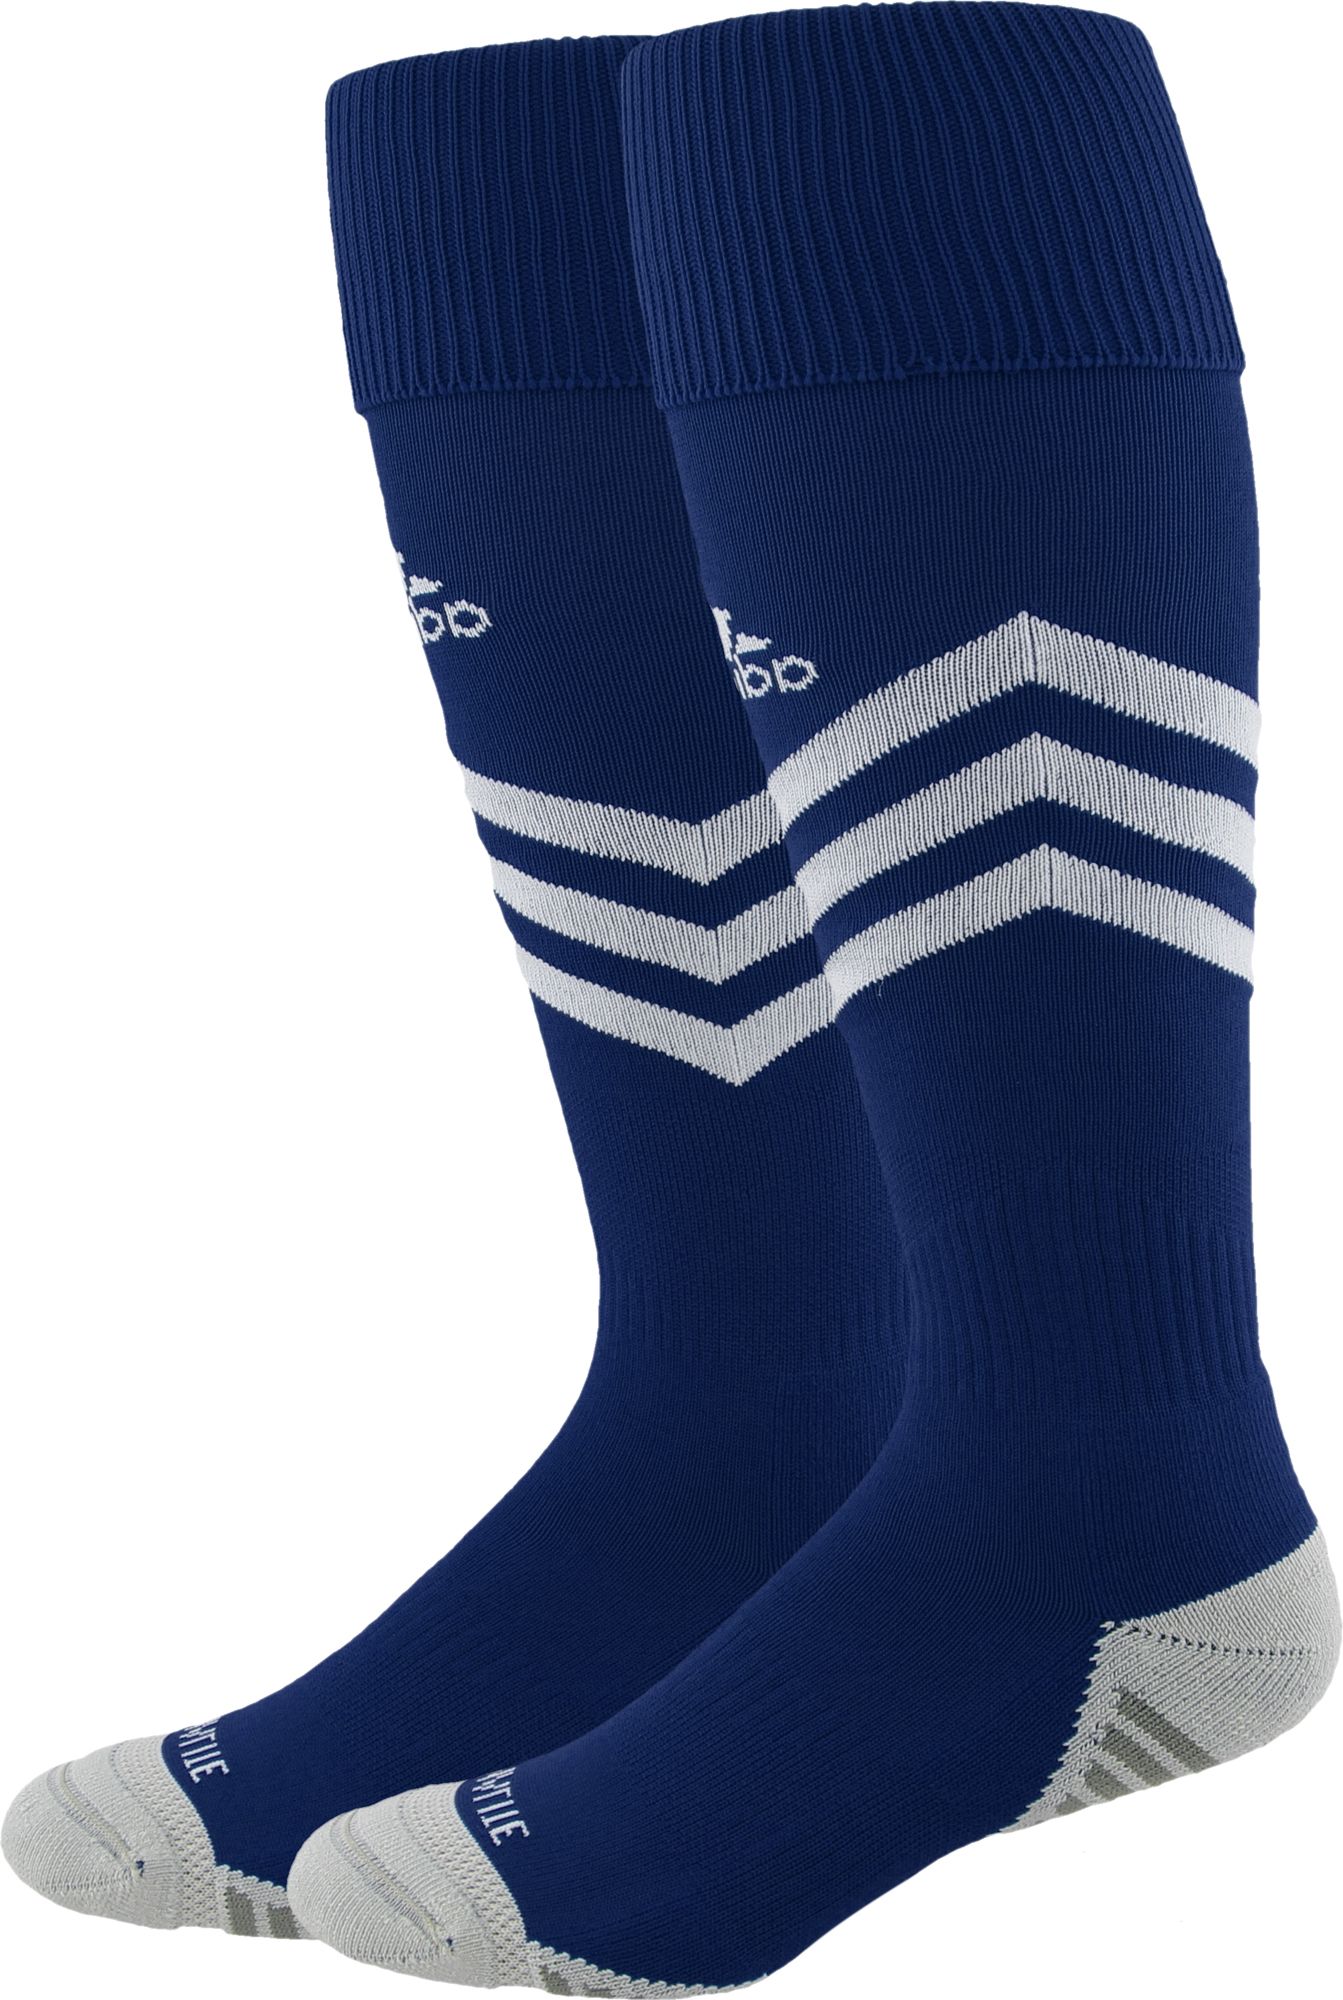 adidas soccer socks